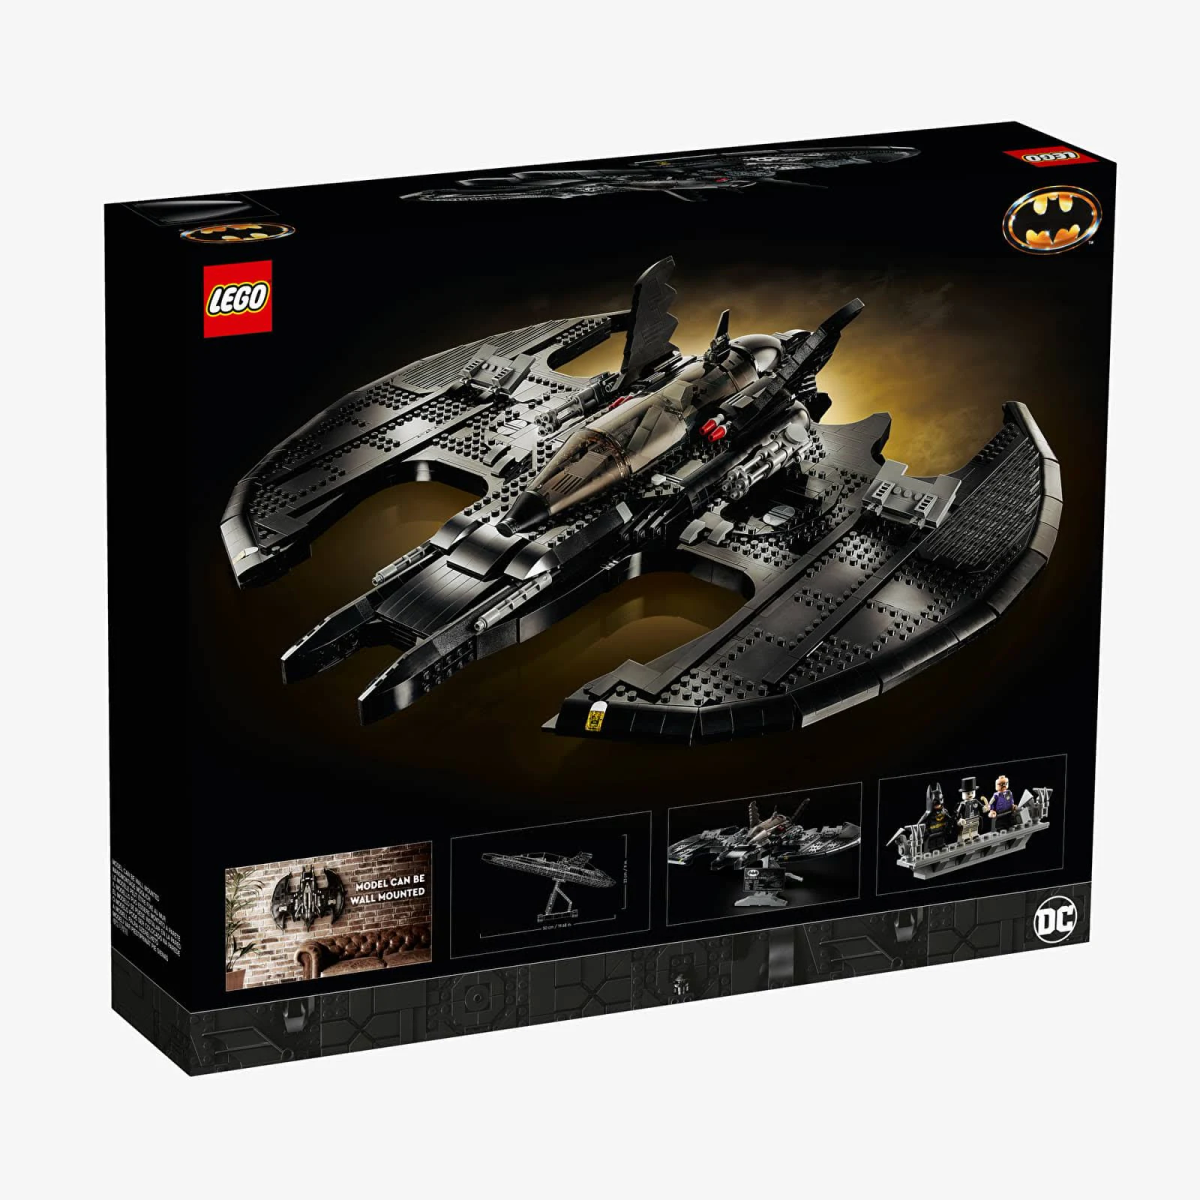 Schwarz Bausatz LEGO 76161